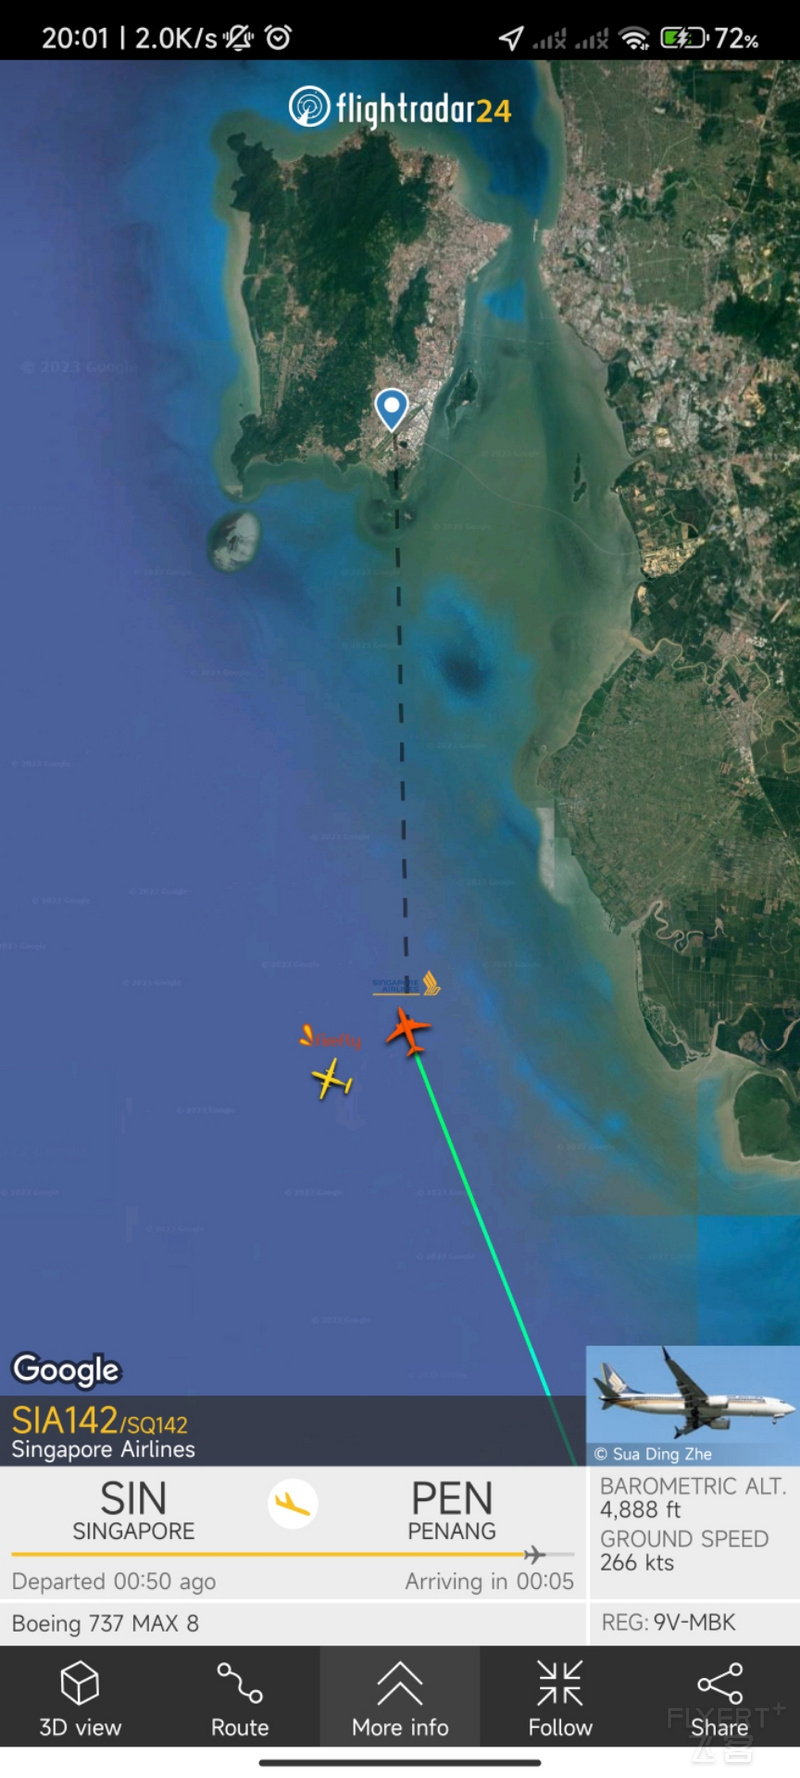 新加坡航空 SQ141 槟城-新加坡 波音737-Max8 经济舱飞行体验